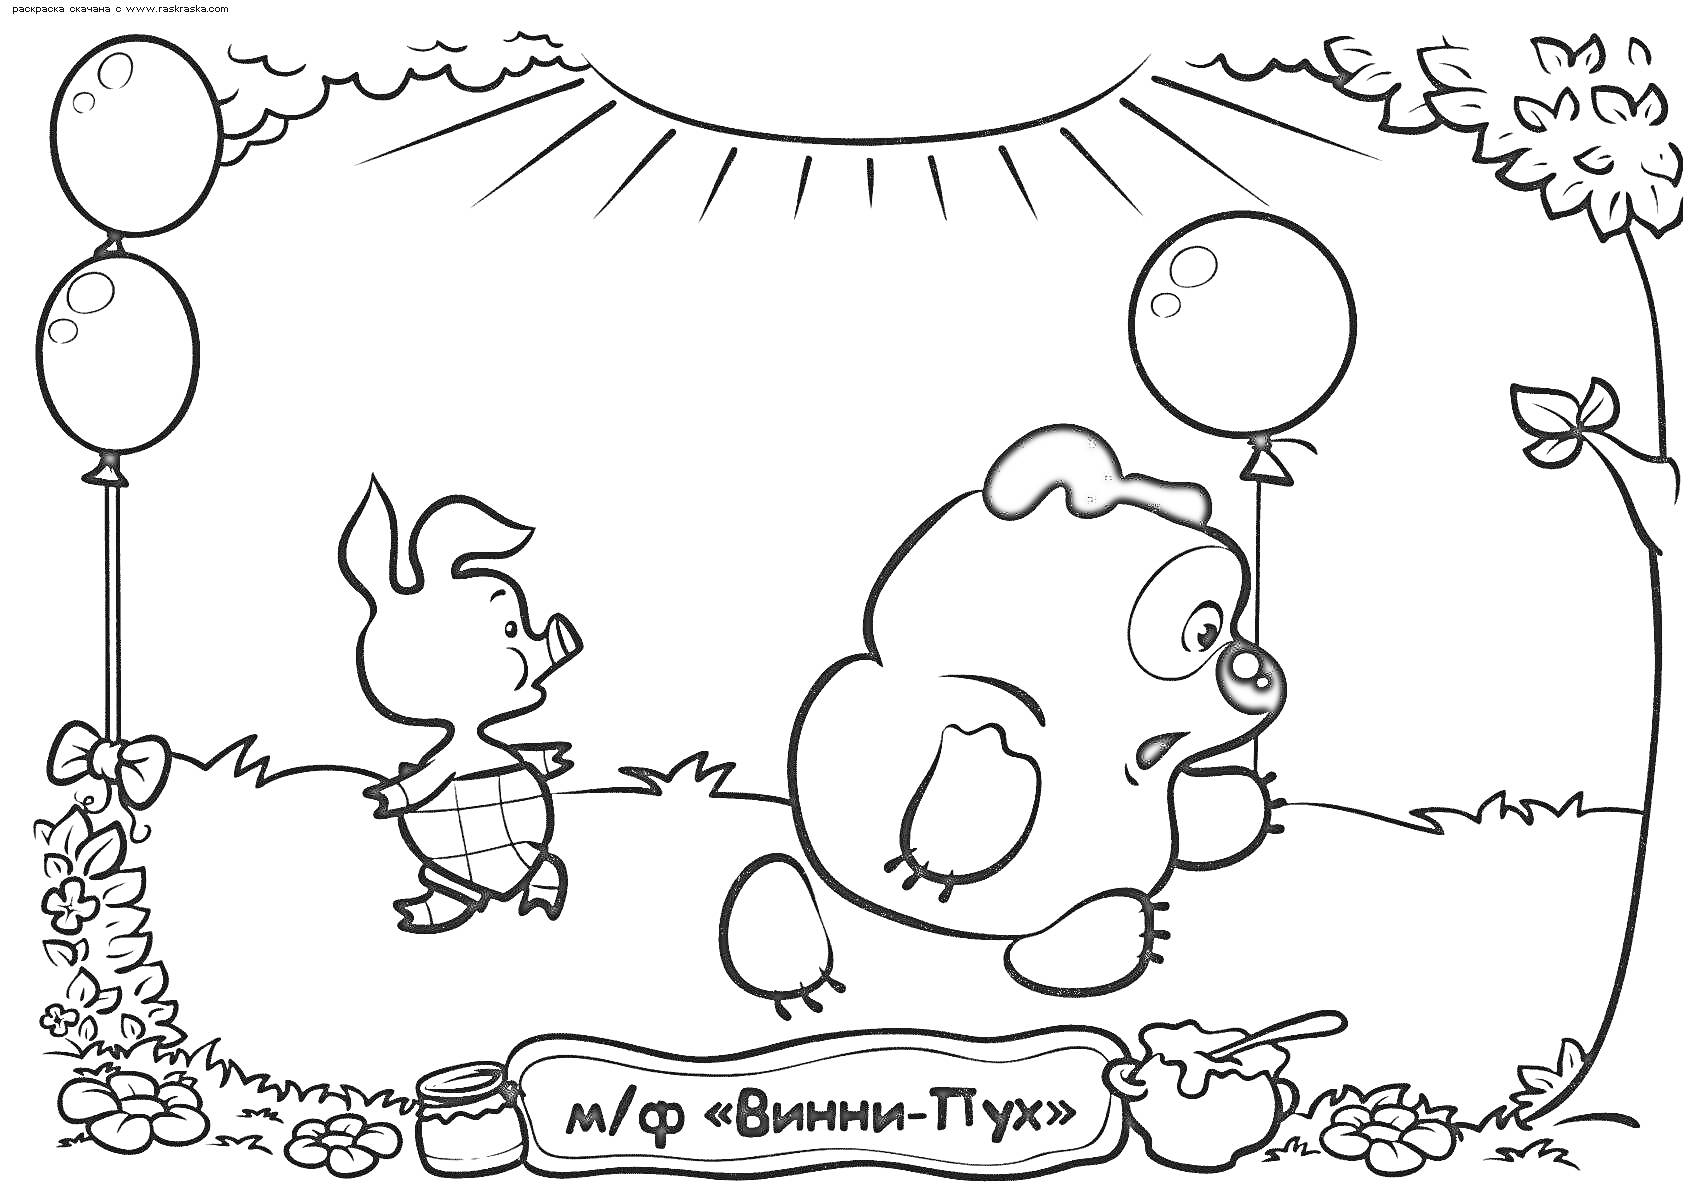 Винни Пух и Пятачок с двумя воздушными шарами на лугу, горшок меда и ложка, табличка с надписью, растительность и солнце на фоне